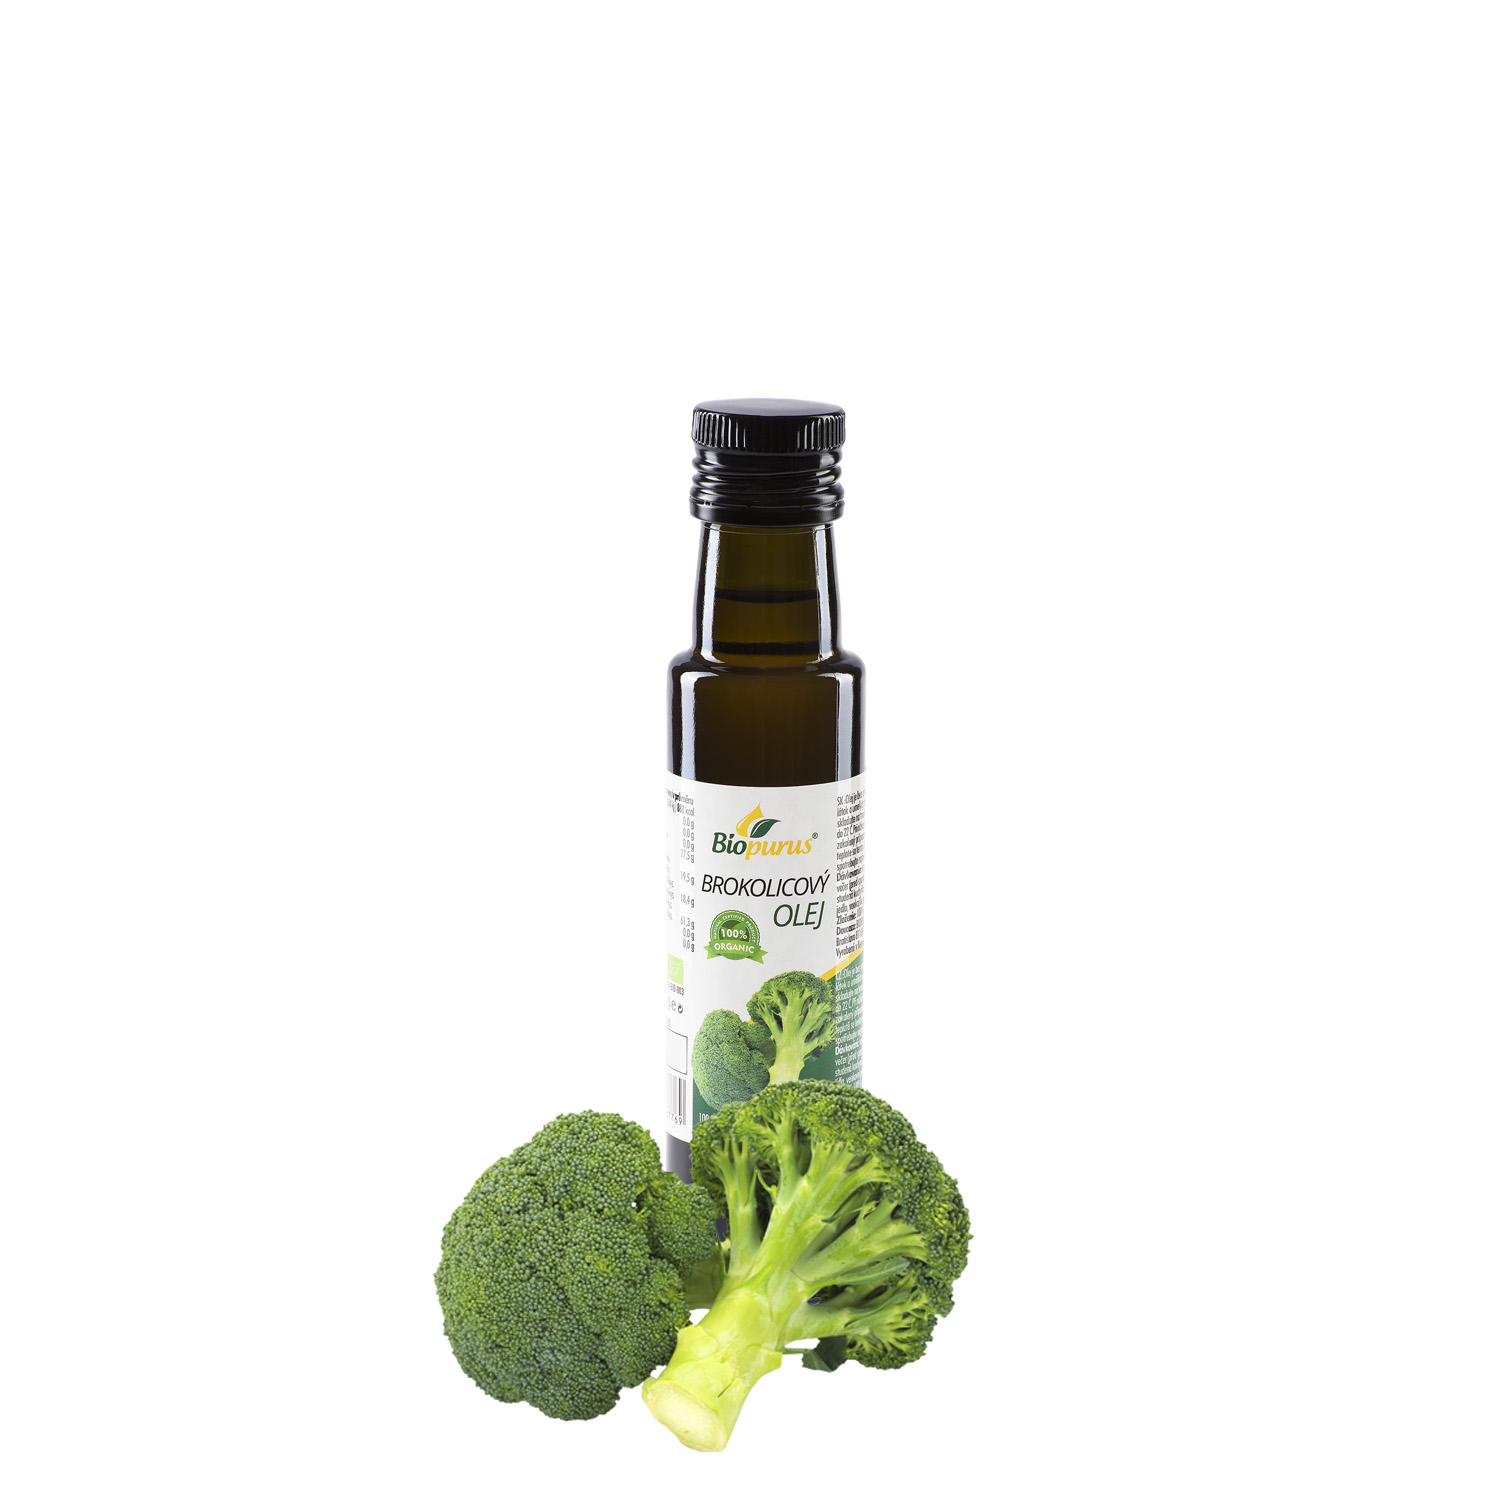 Brokolicový olej 100ml -BIO